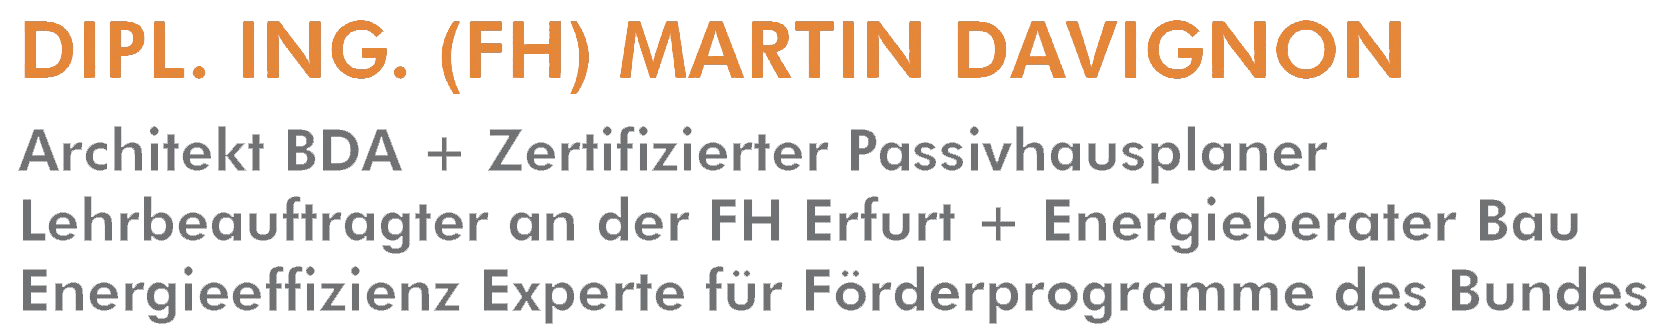 Neben der FH Erfurt und der expo arbeitet zertifizierter Passivhausplaner eng mit Martin Davignon (Architekt, Lehrbeauftragter und Energieeffizienz Experte) zusammen.